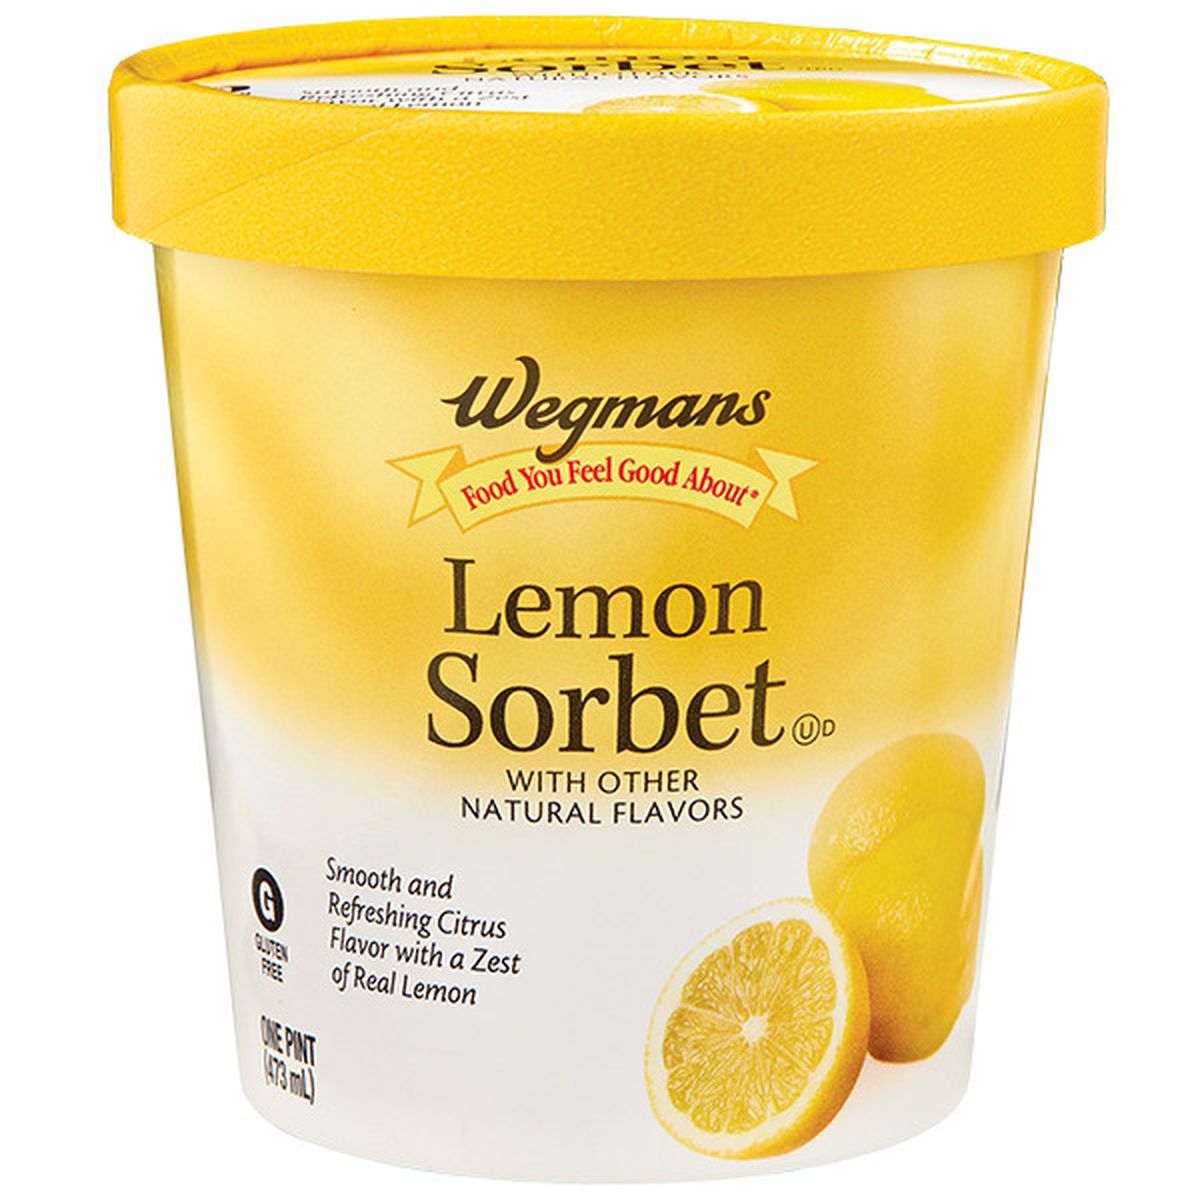 Calories in Wegmans Lemon Sorbet